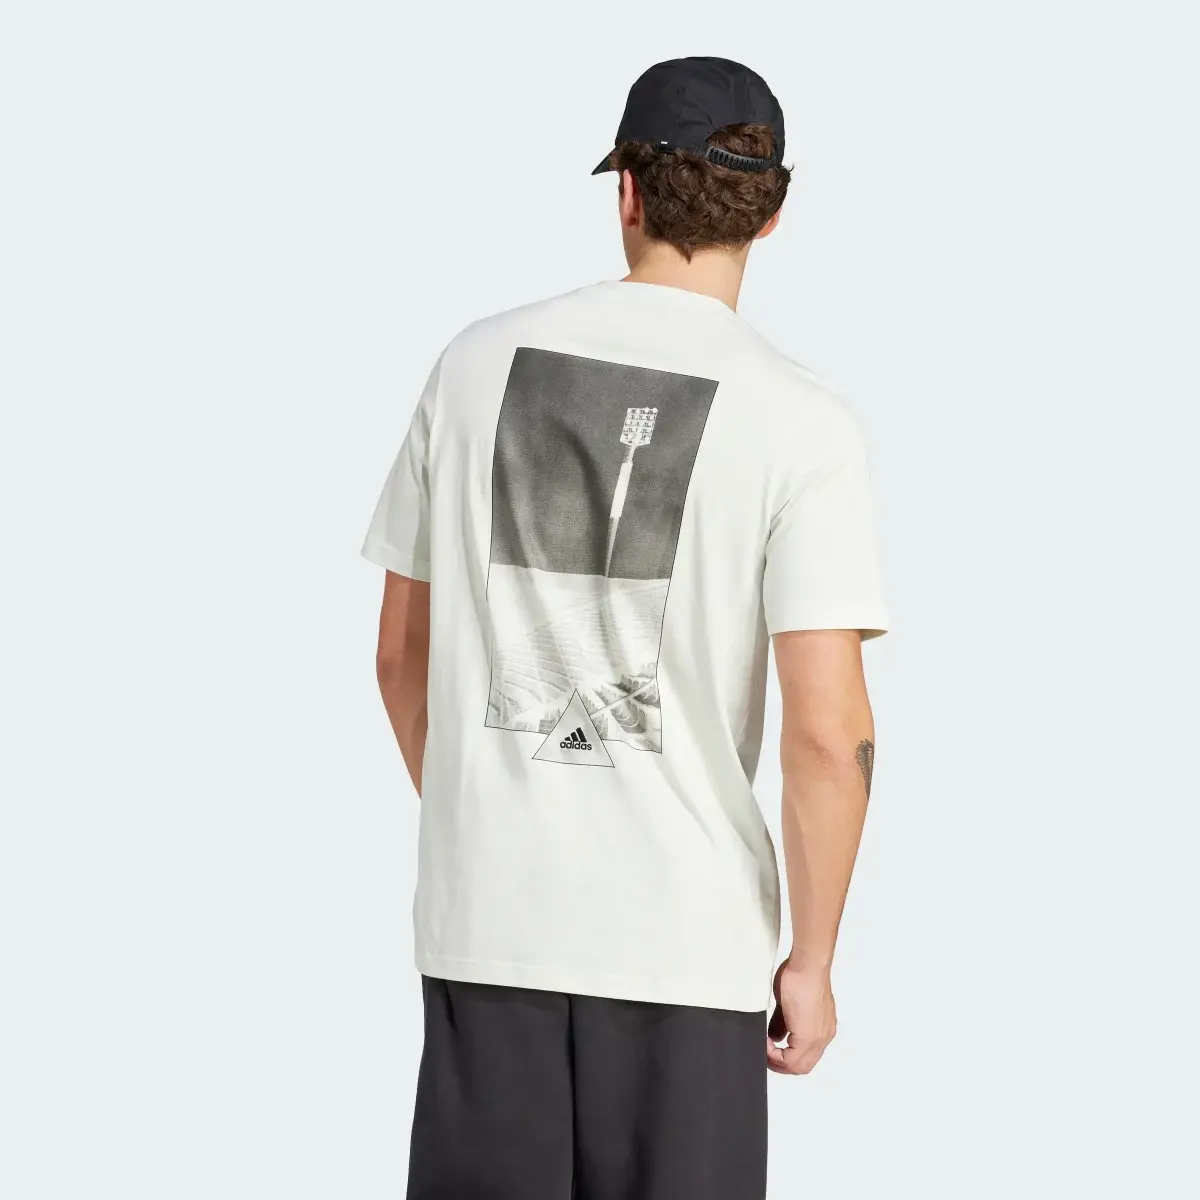 Adidas House of Tiro Graphic T-Shirt. 3